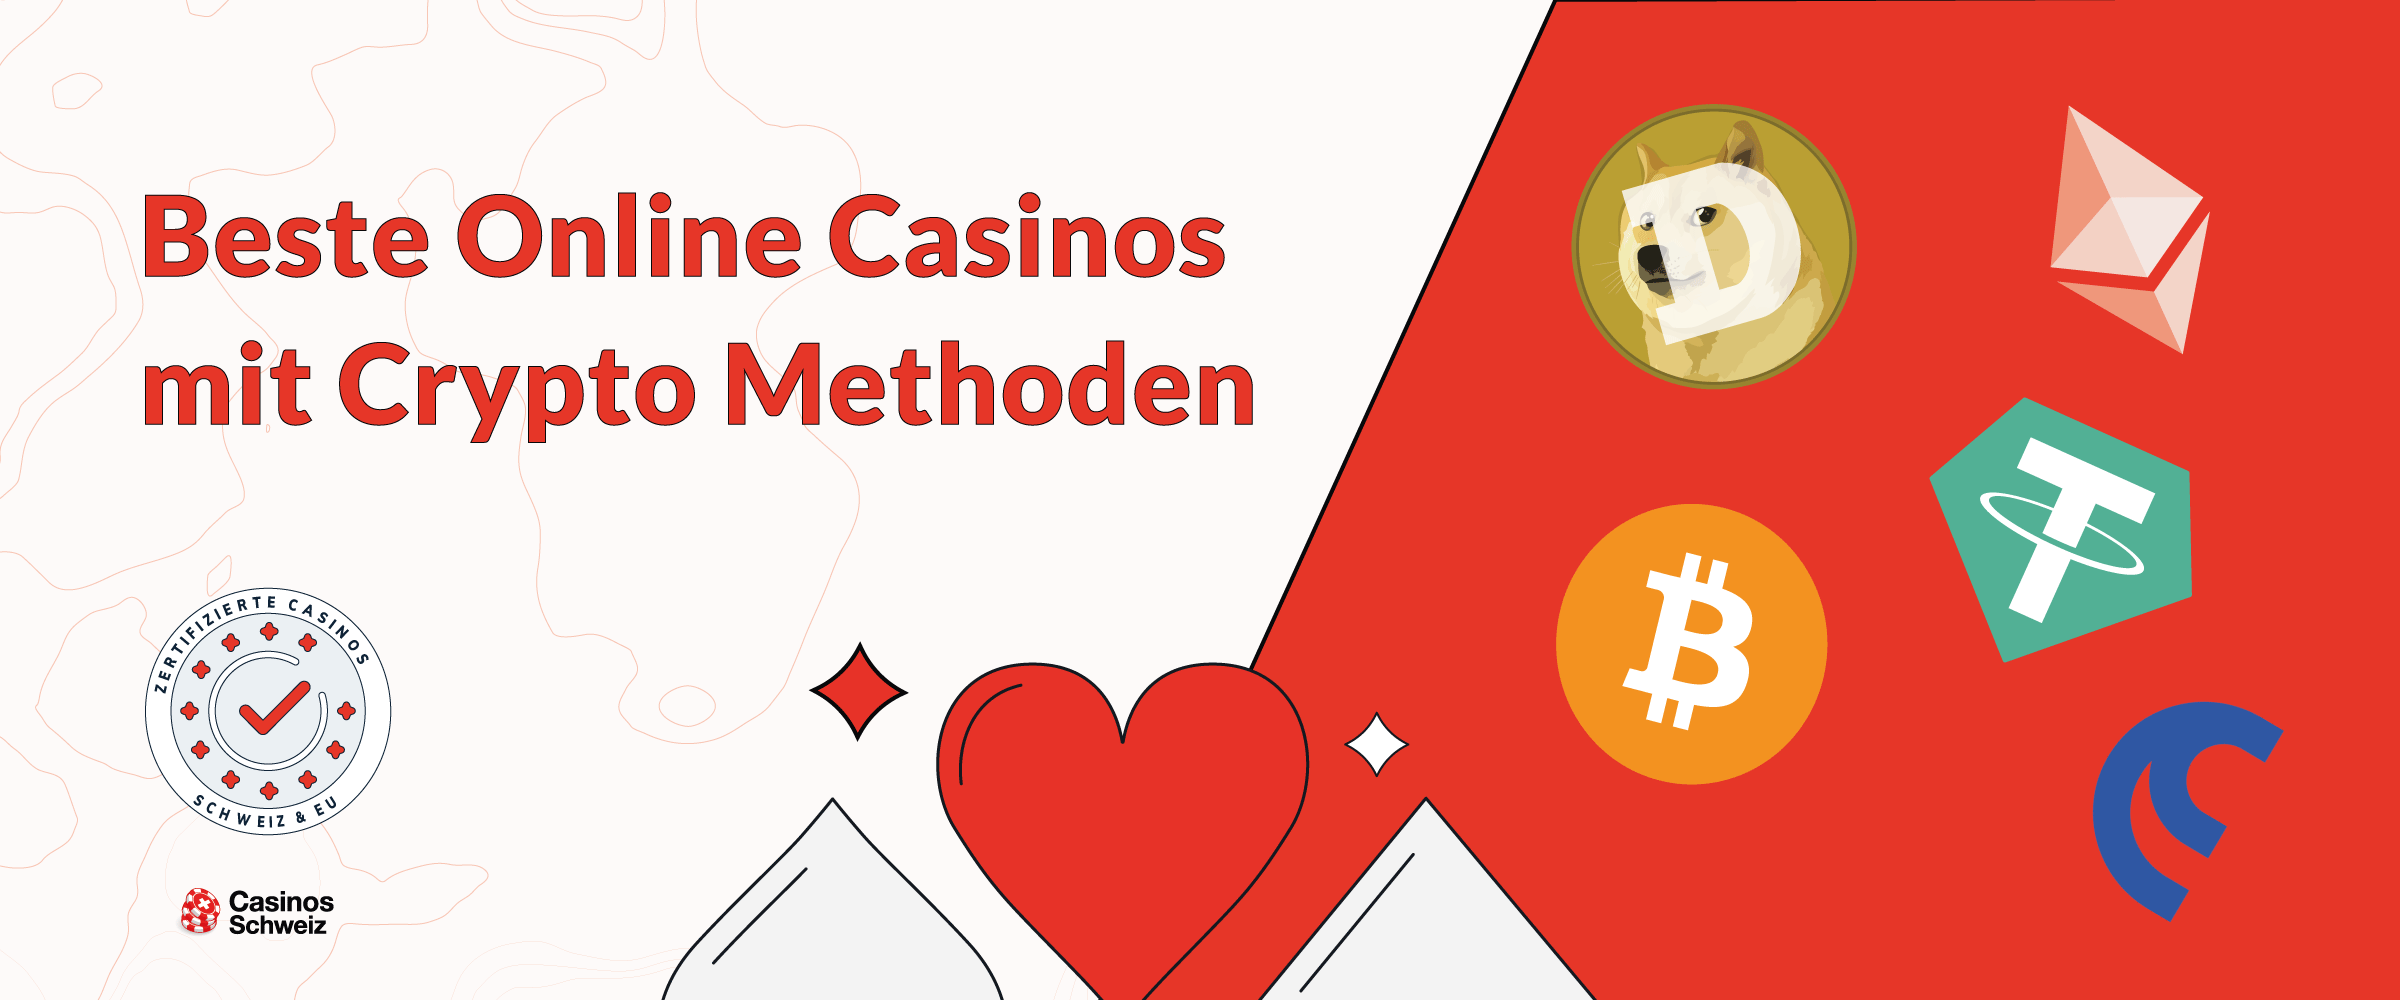 Beste Online Casinos mit Crypto Methoden